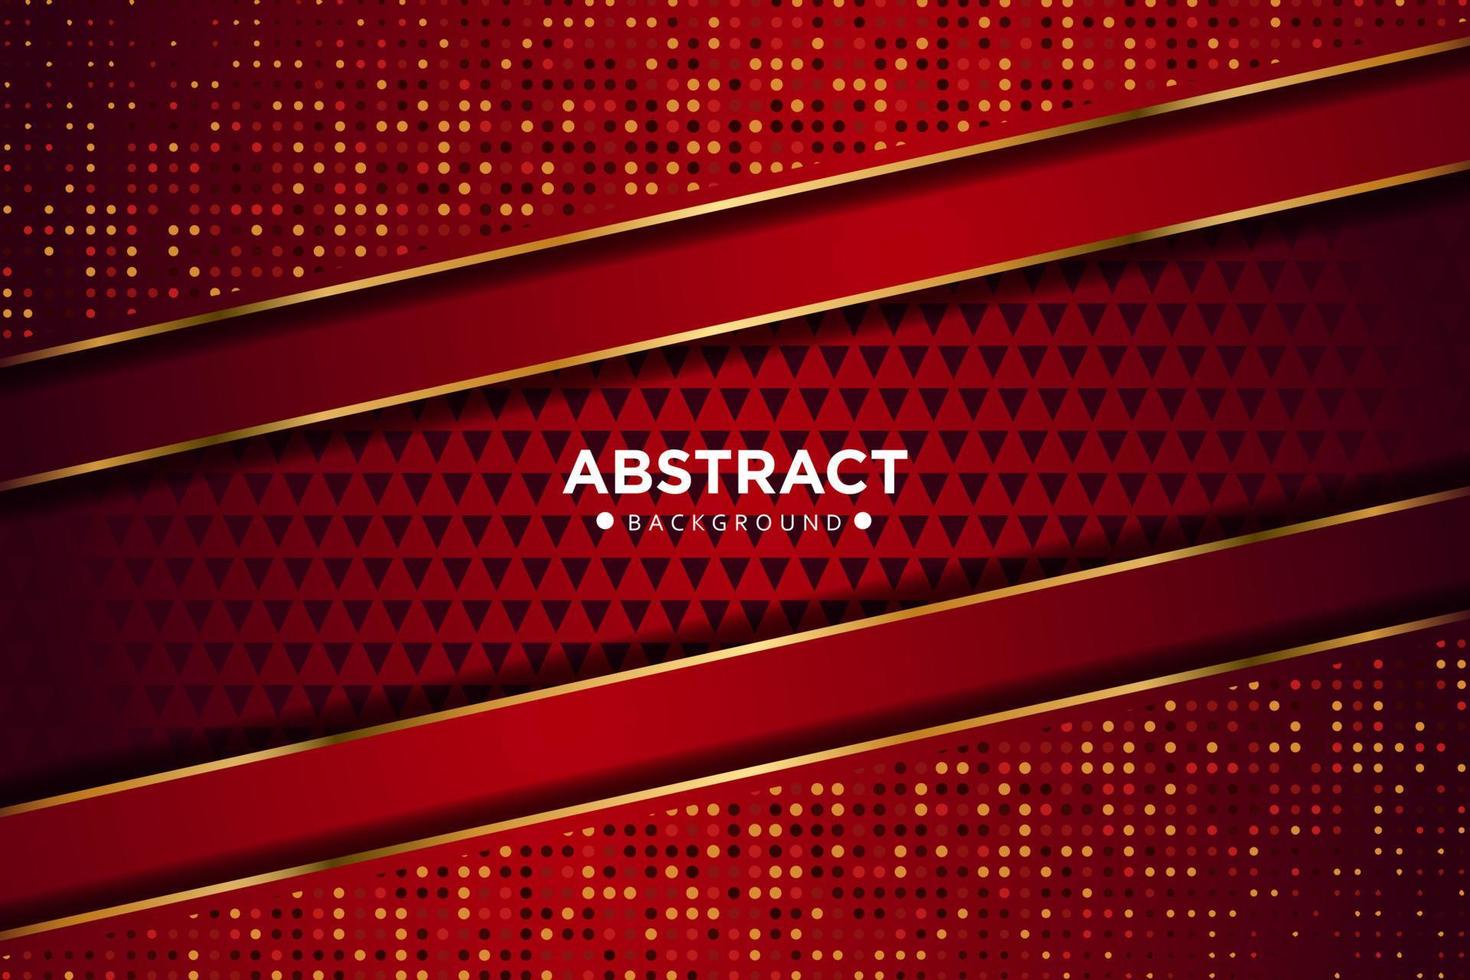 abstrakte rote überlappung mit glitzerpunkten und goldenem liniengradientendesign moderne luxus-futuristische technologiehintergrund-vektorillustration. vektor